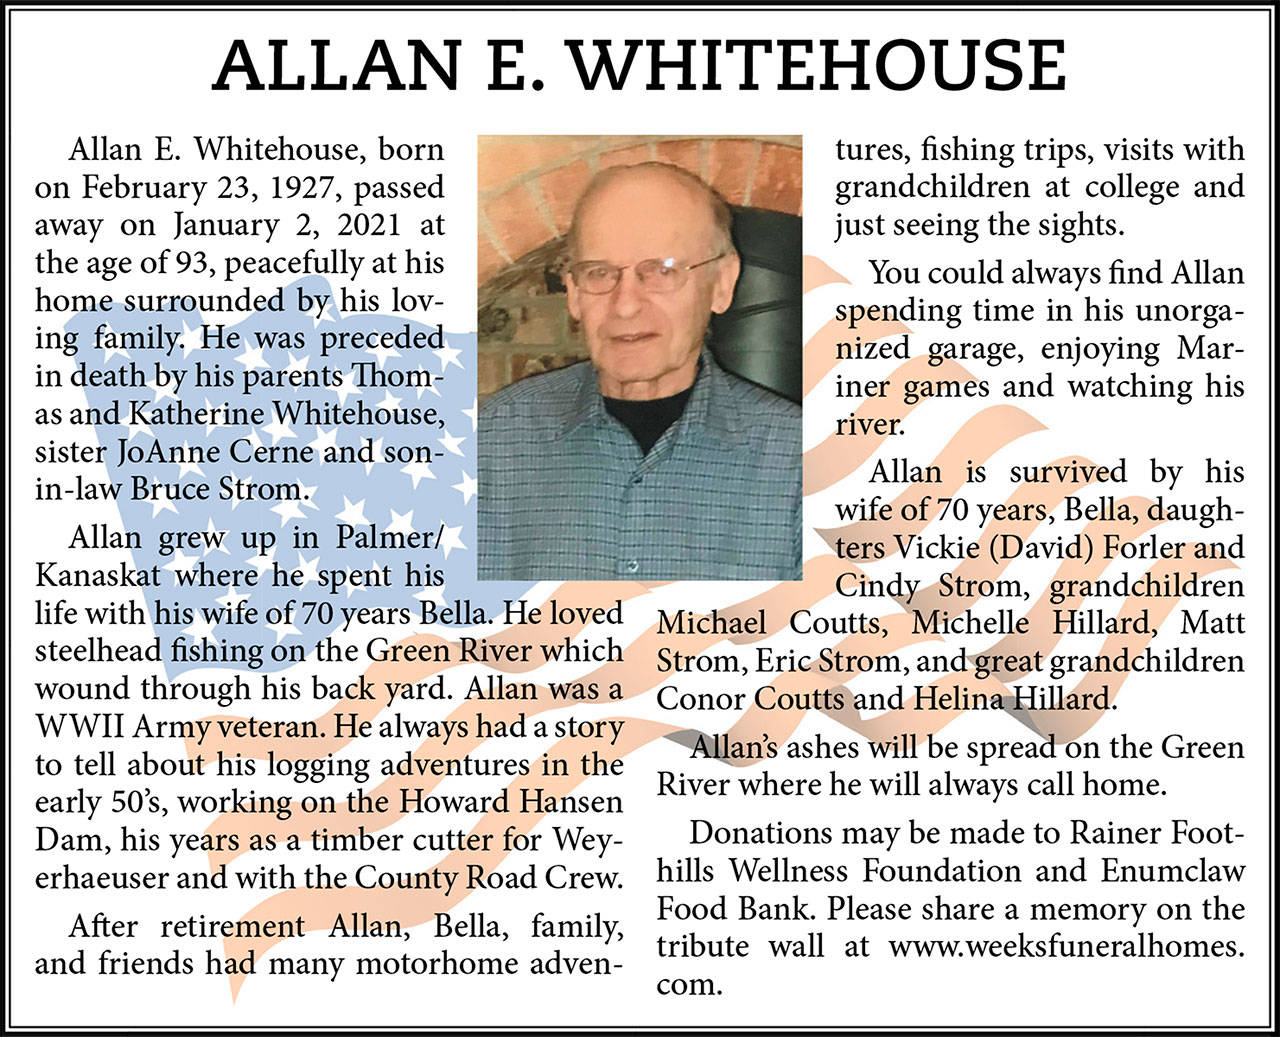 Allan Whitehouse